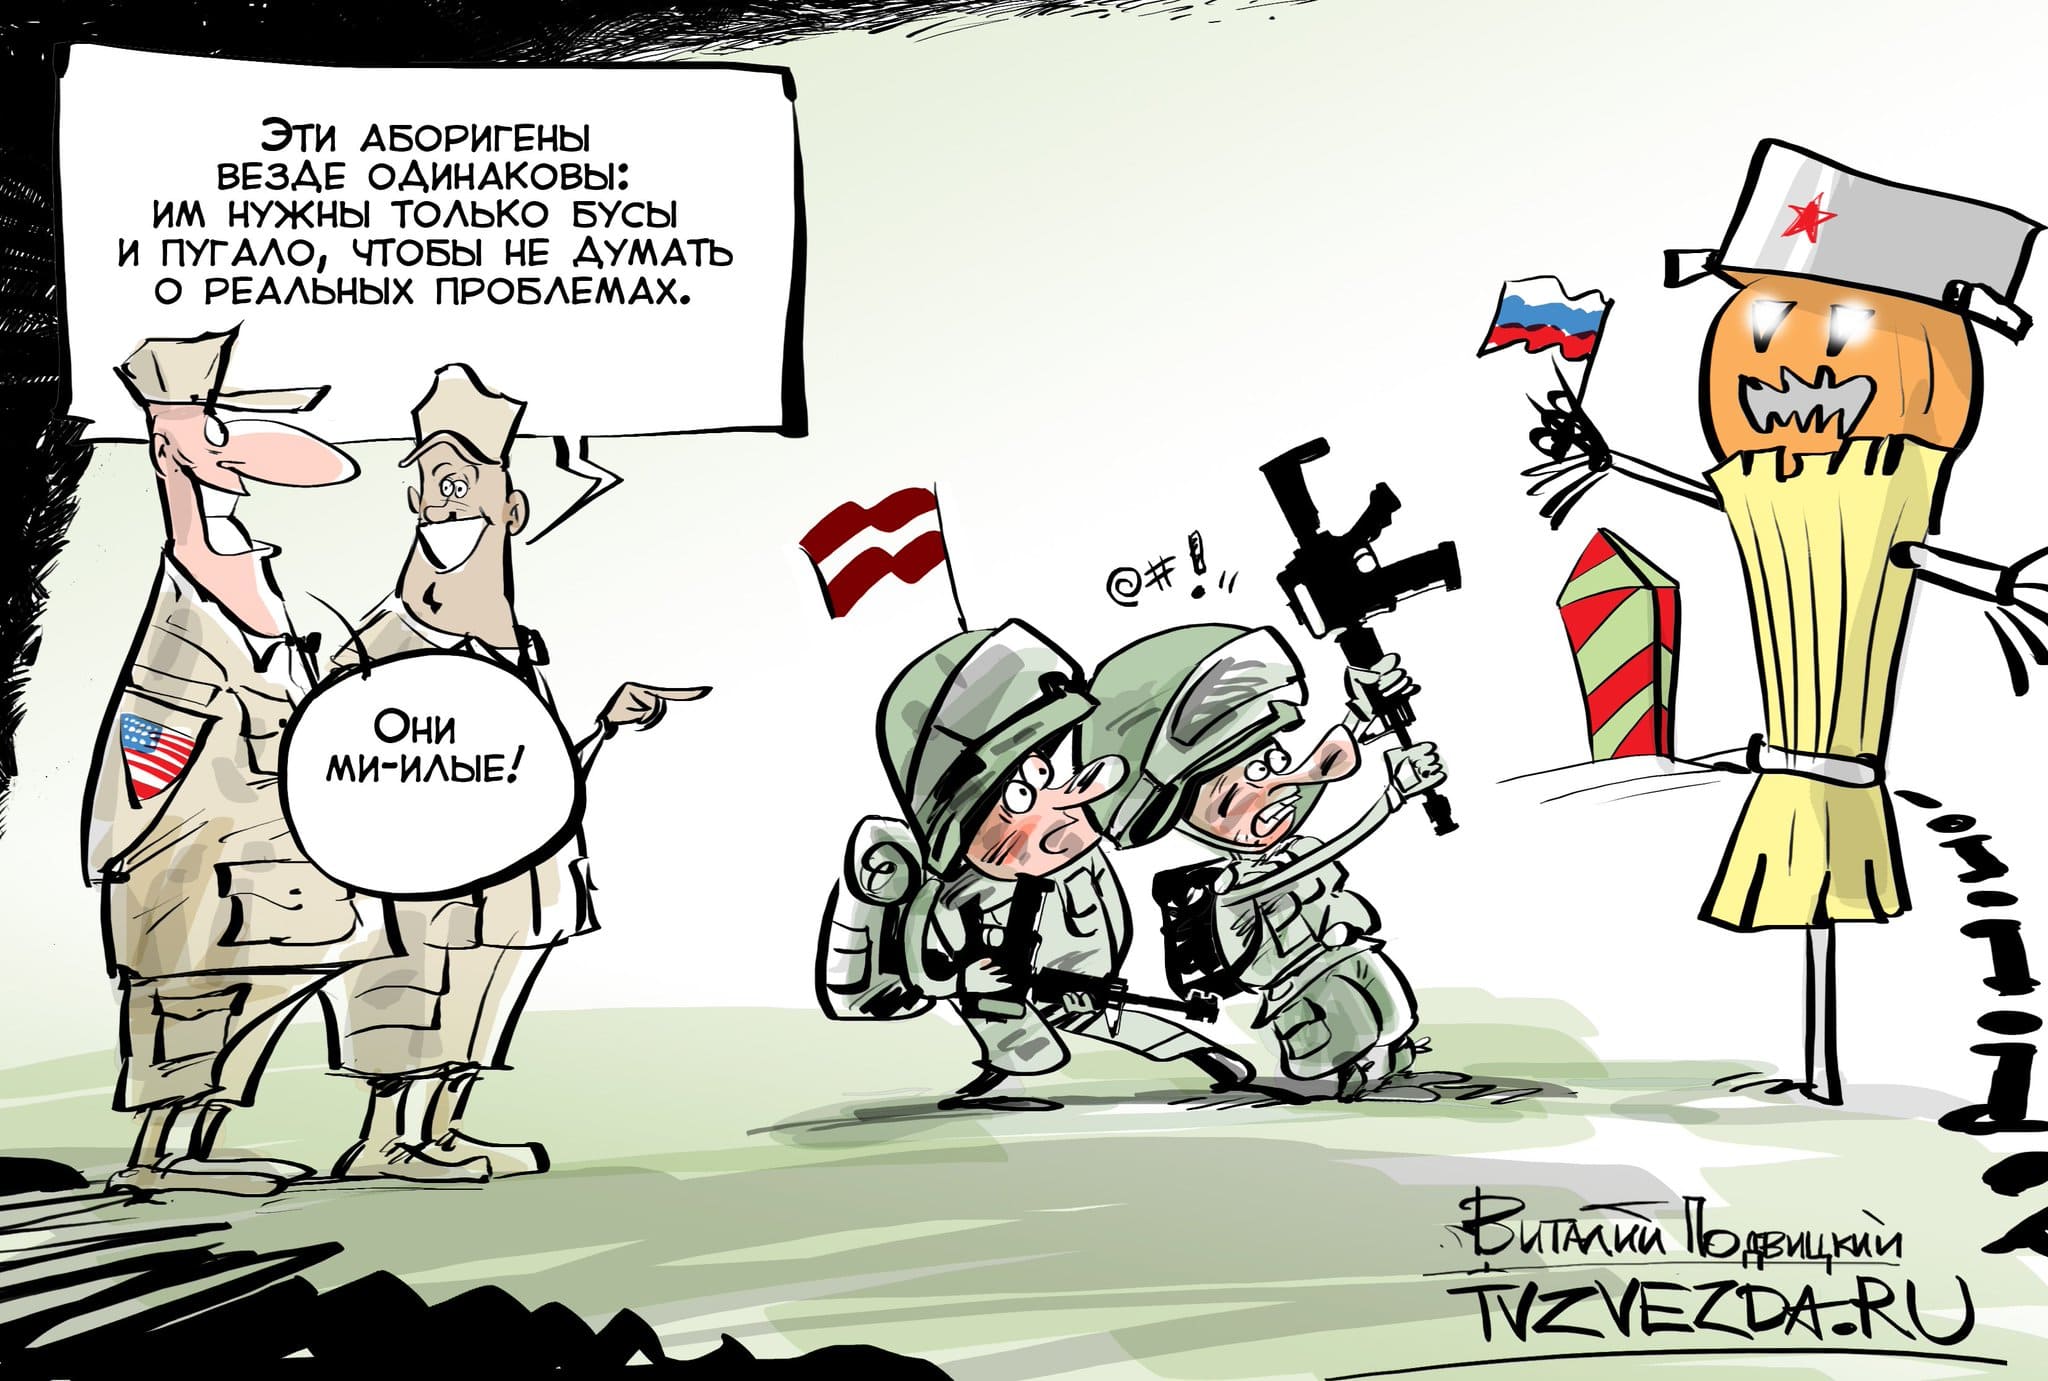 Русофобия сдает позиции. Латвия карикатура. Карикатура на латышей. Карикатура на литовцев. Прибалтика Россия карикатуры.